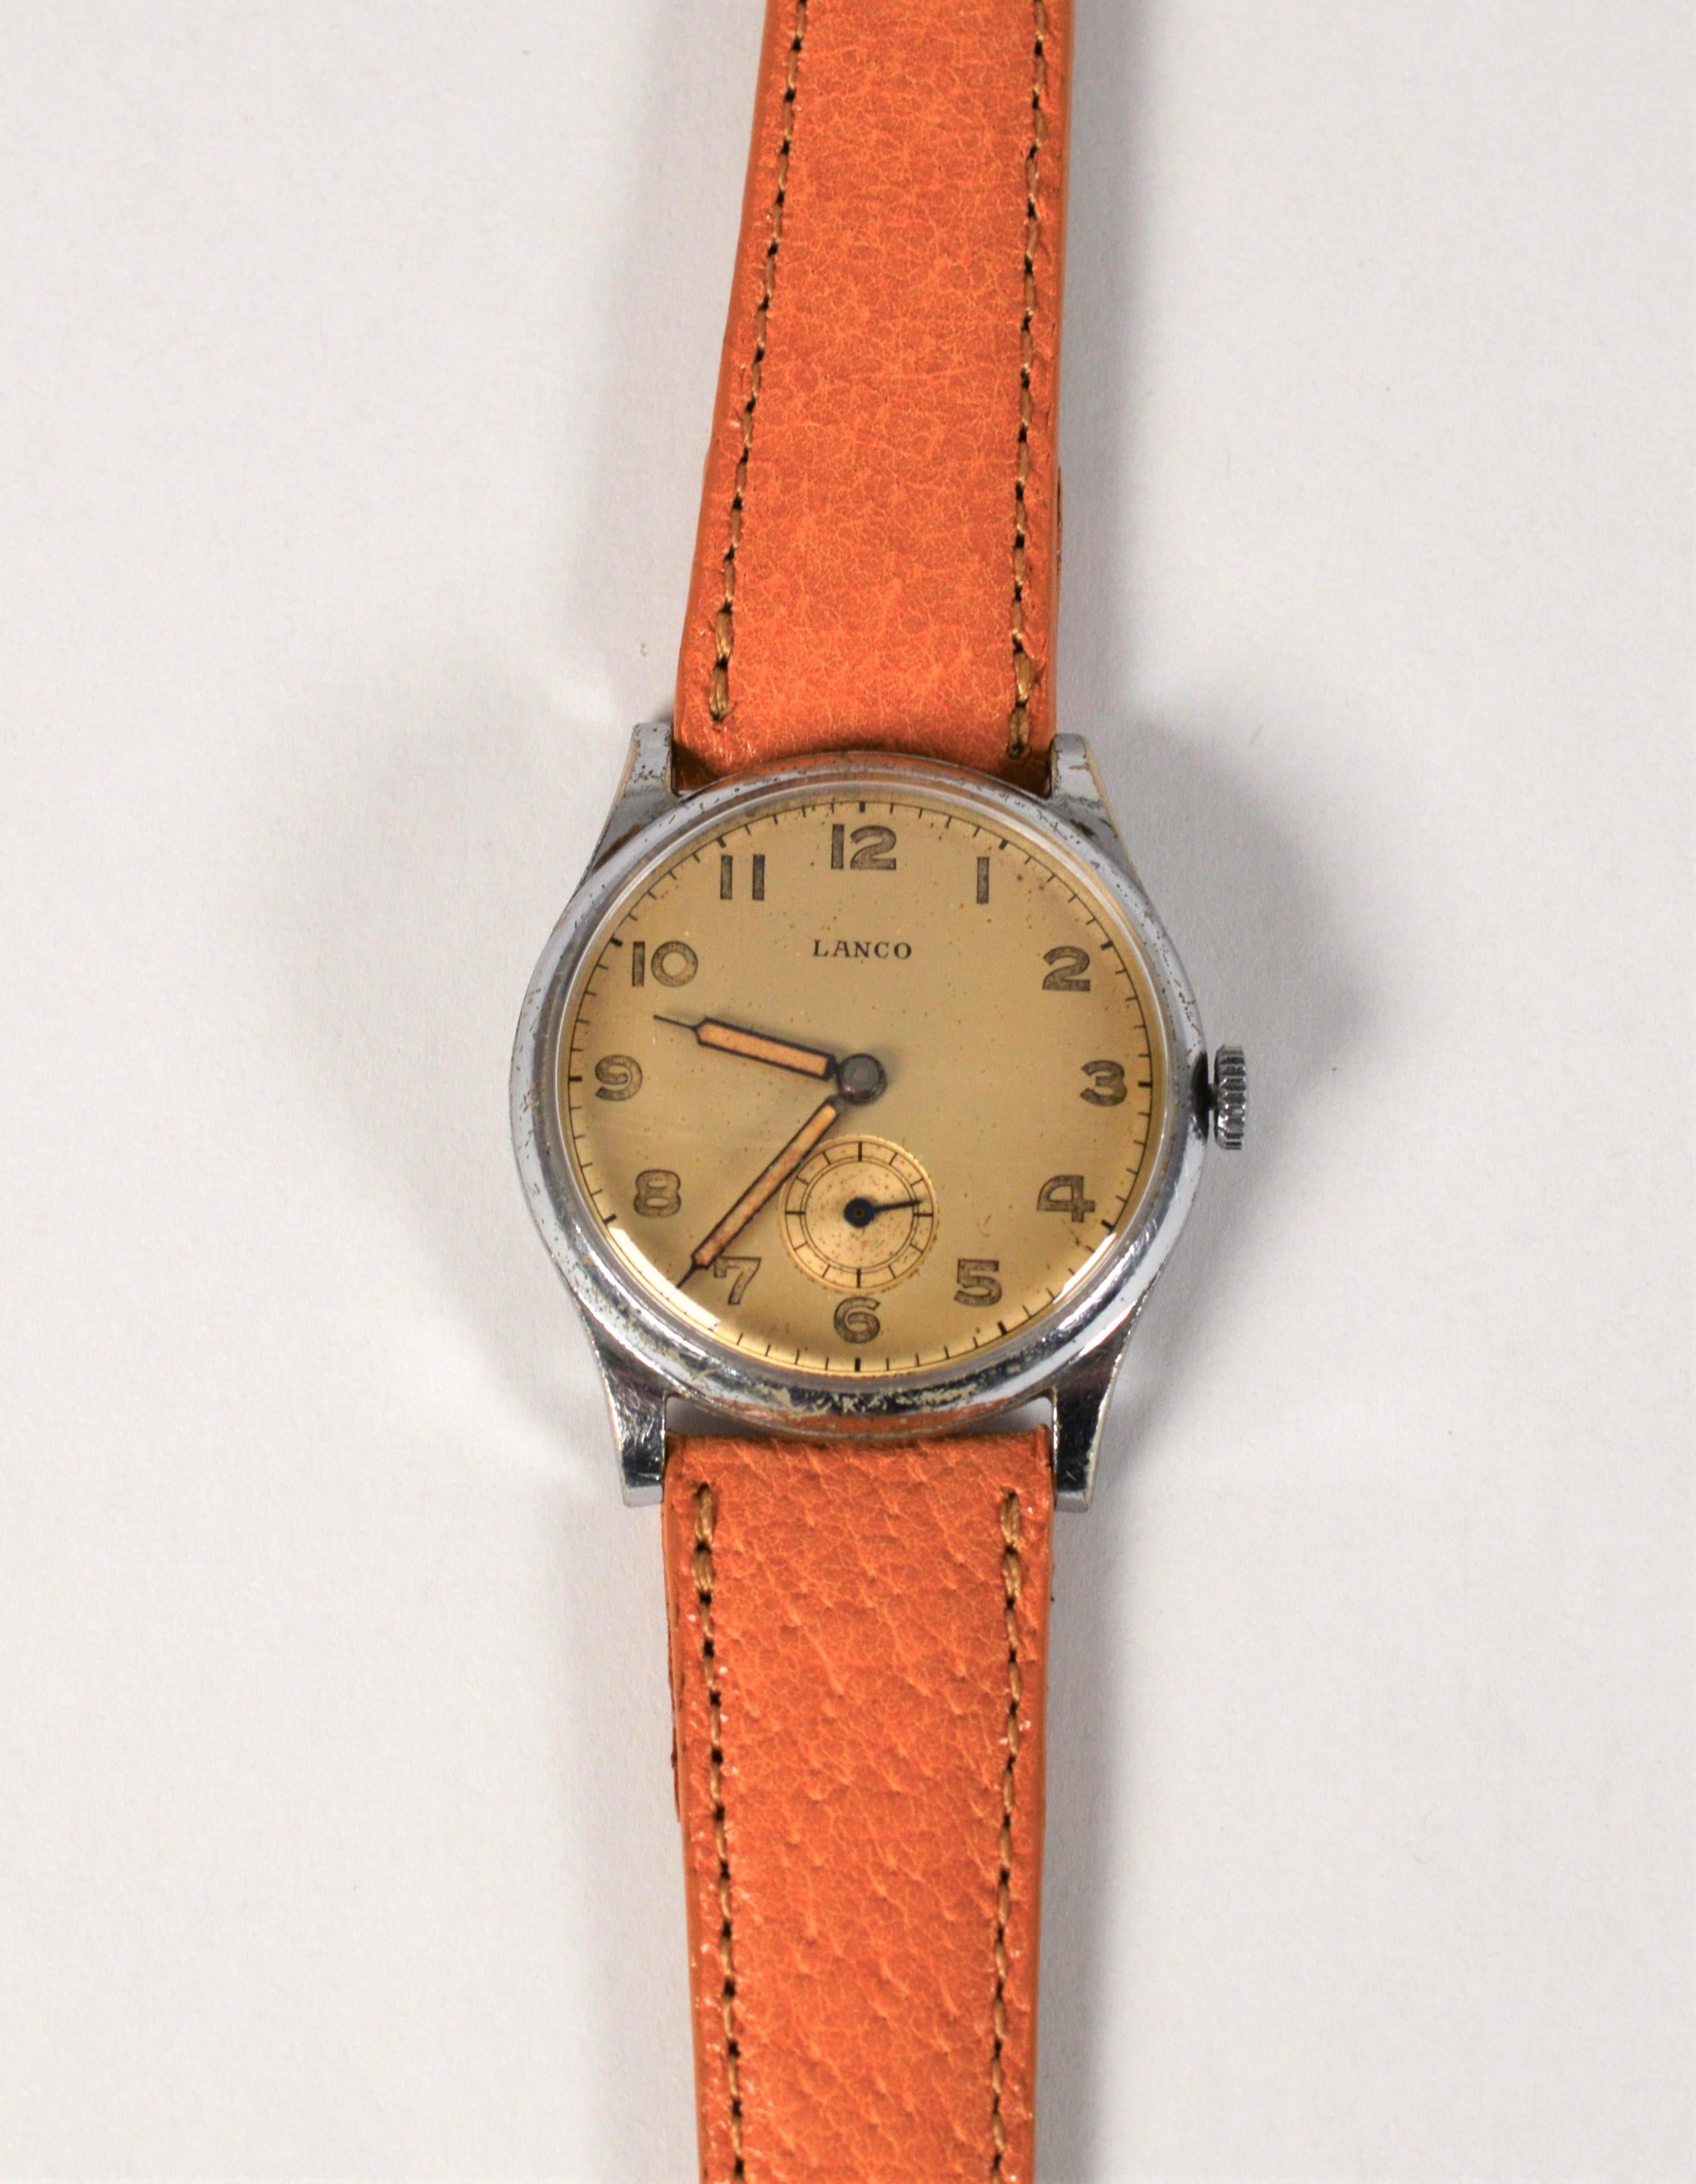 Vintage avec du caractère, cette montre-bracelet en acier inoxydable Lanco est bien conservée et était populaire auprès de l'armée allemande pendant la Seconde Guerre mondiale. Le garde-temps présente un cadran en or satiné avec des index en